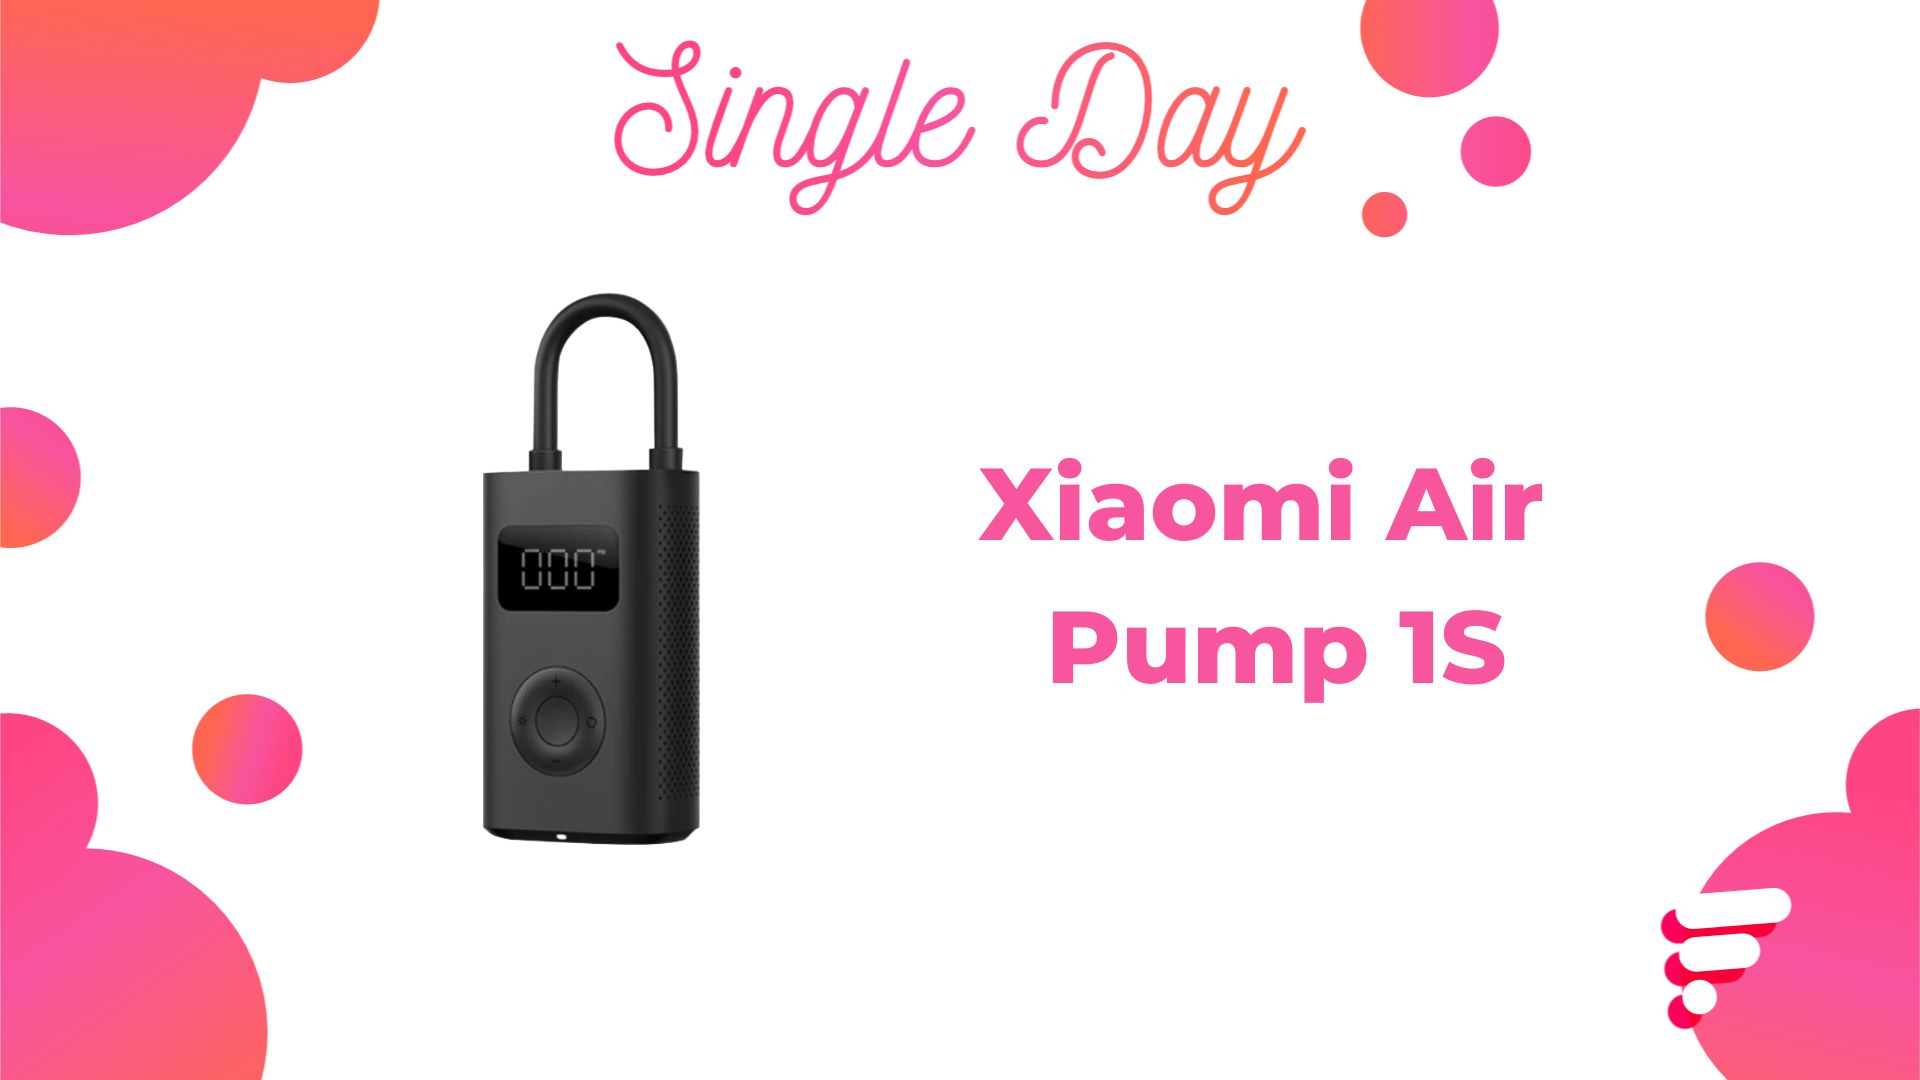 Vente Xiaomi Mi Portable Electric Air Pump 1S à bas prix